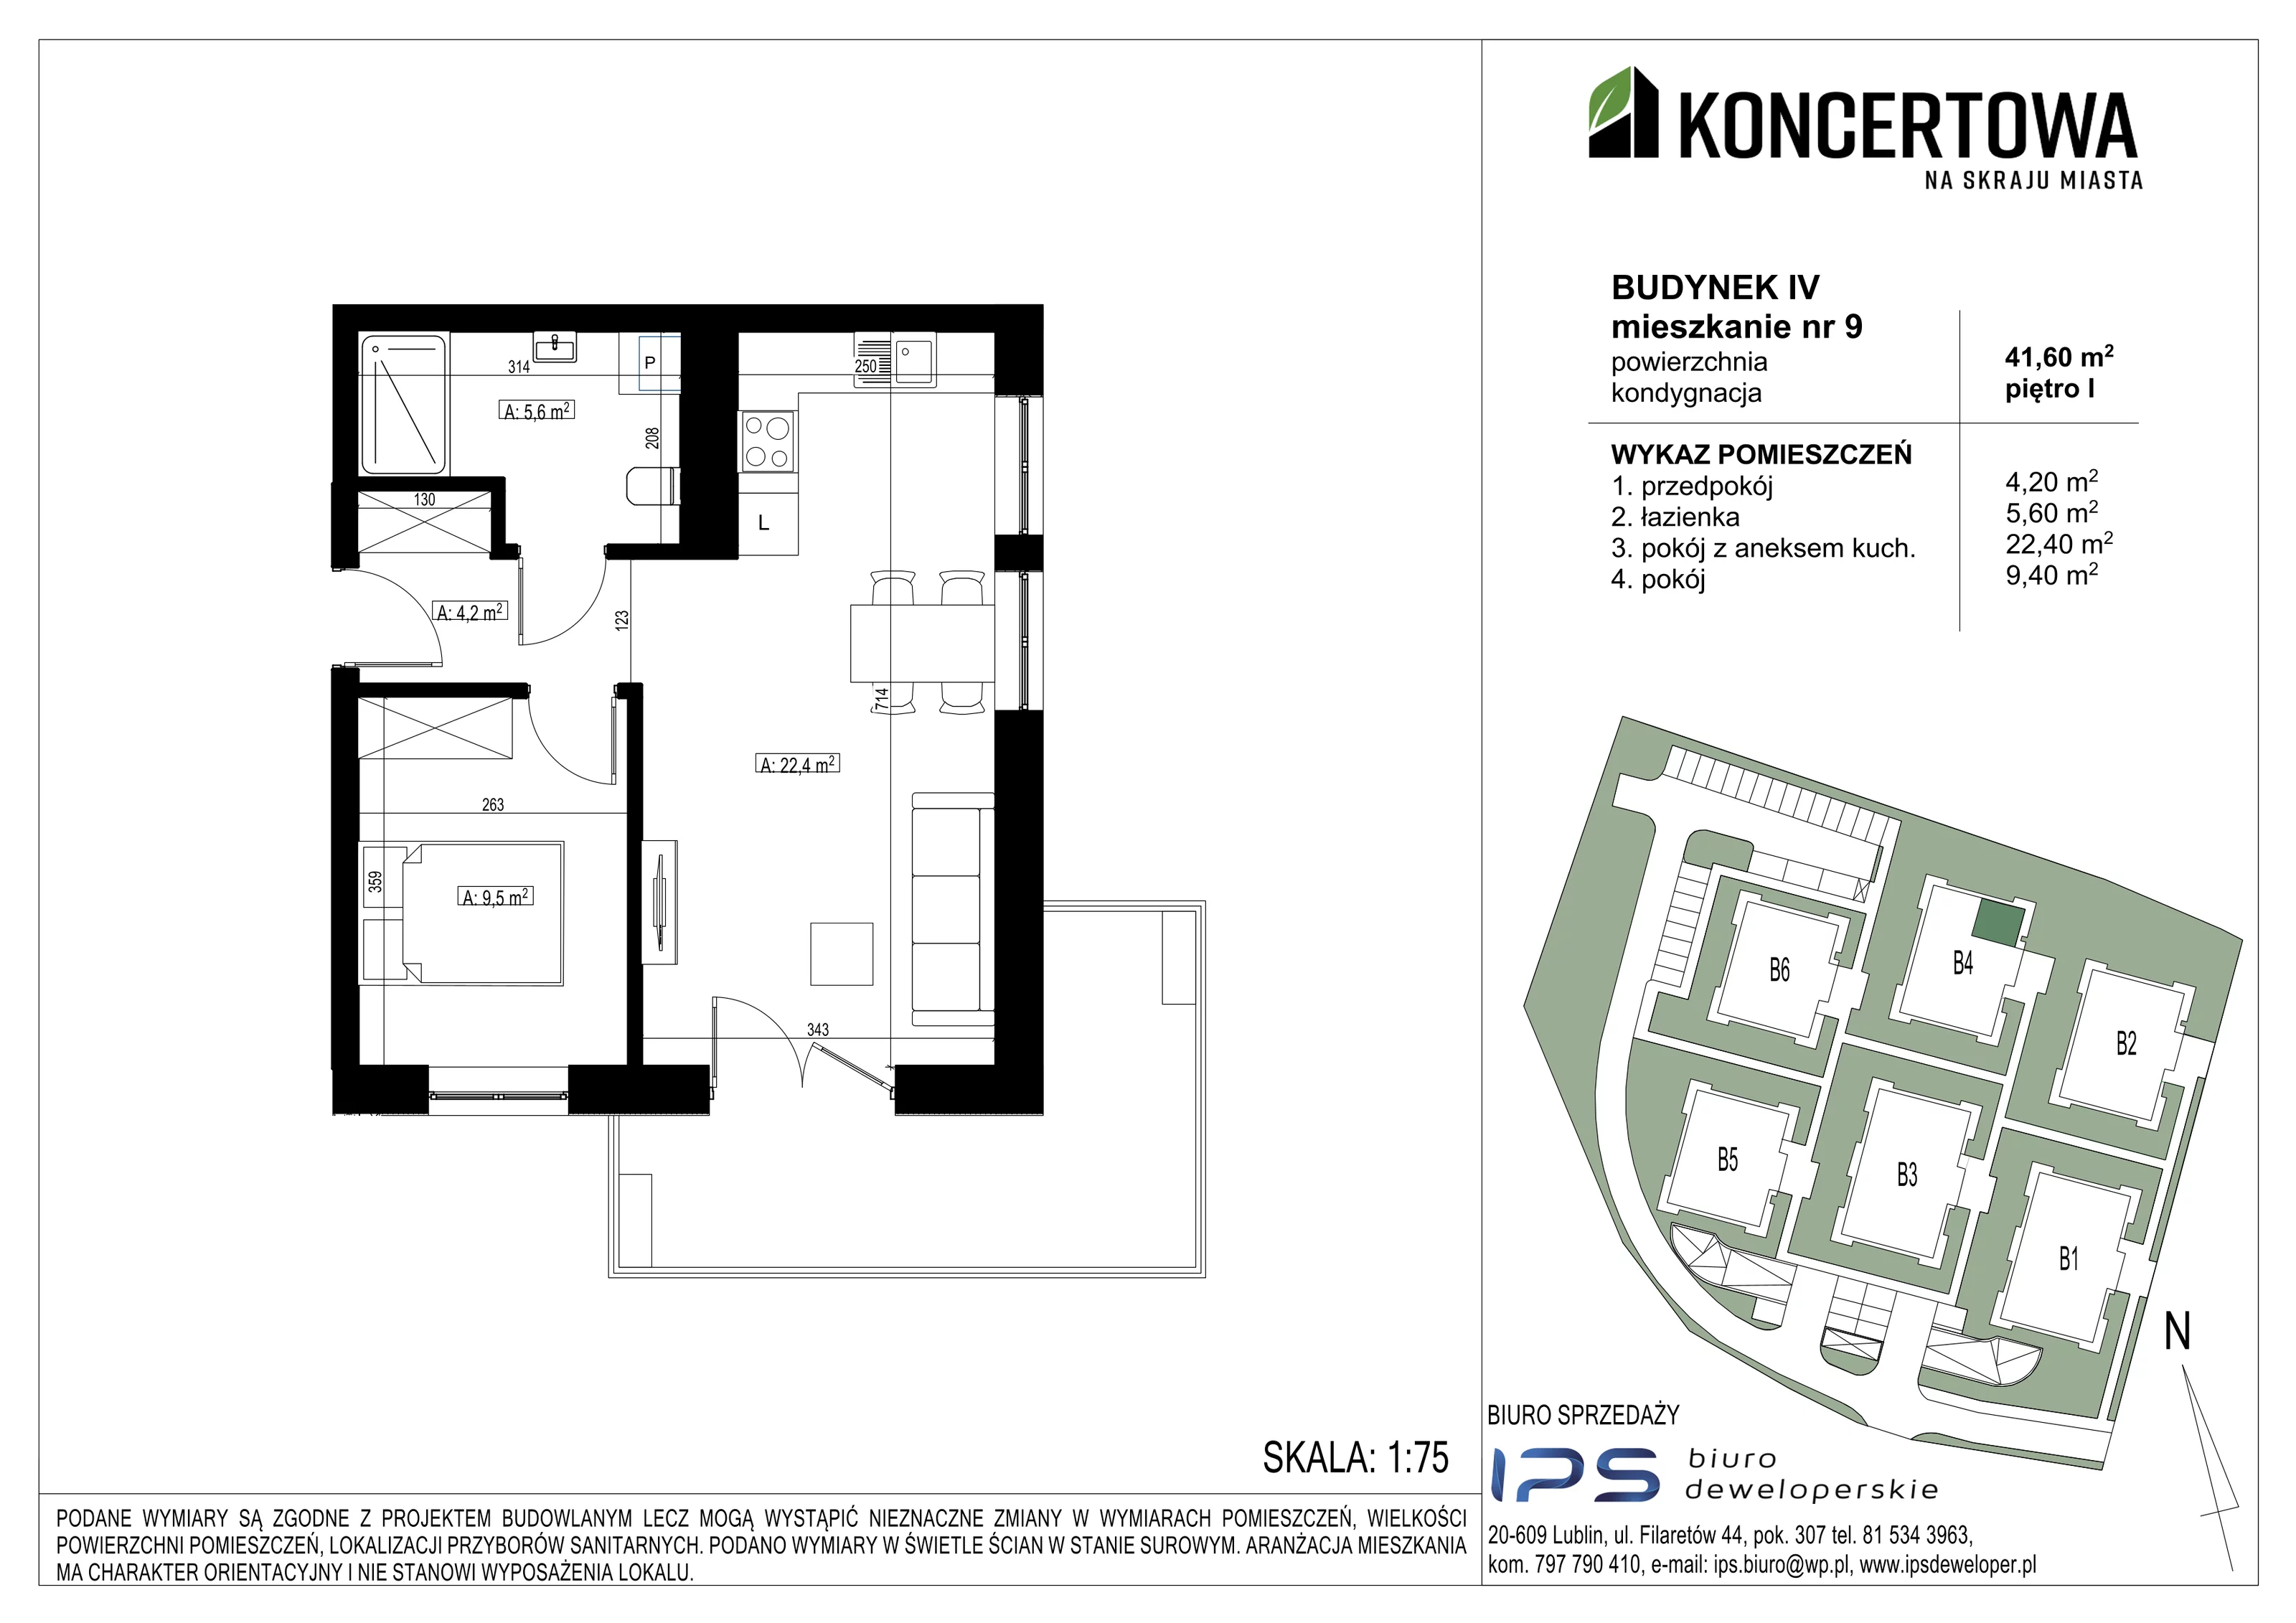 Mieszkanie 41,60 m², piętro 1, oferta nr 2_IV/9, KONCERTOWA - Na skraju miasta, Lublin, Czechów Północny, Czechów Północny,  ul. Koncertowa